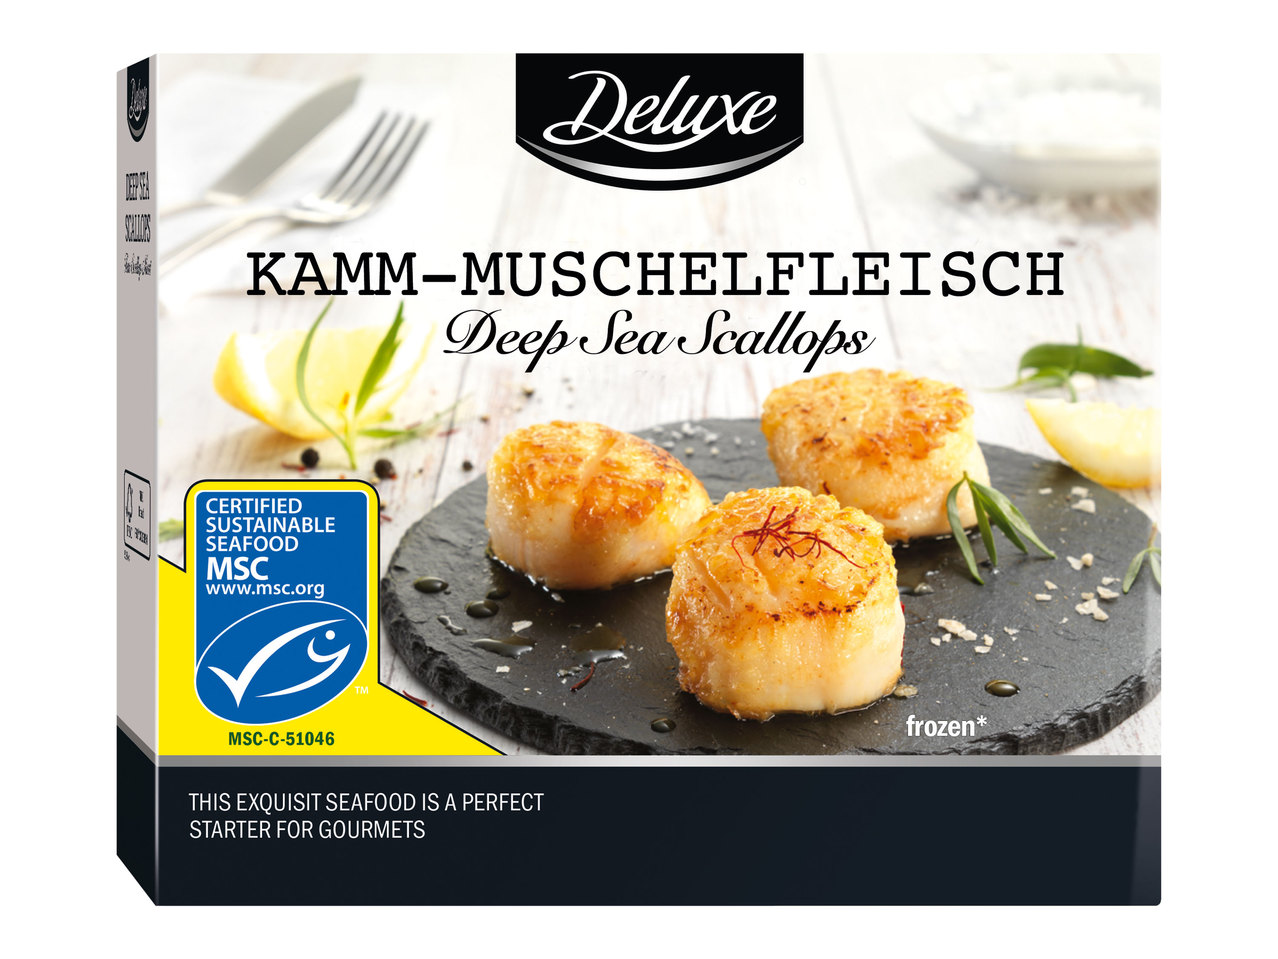 DELUXE Kamm-Muschelfleisch